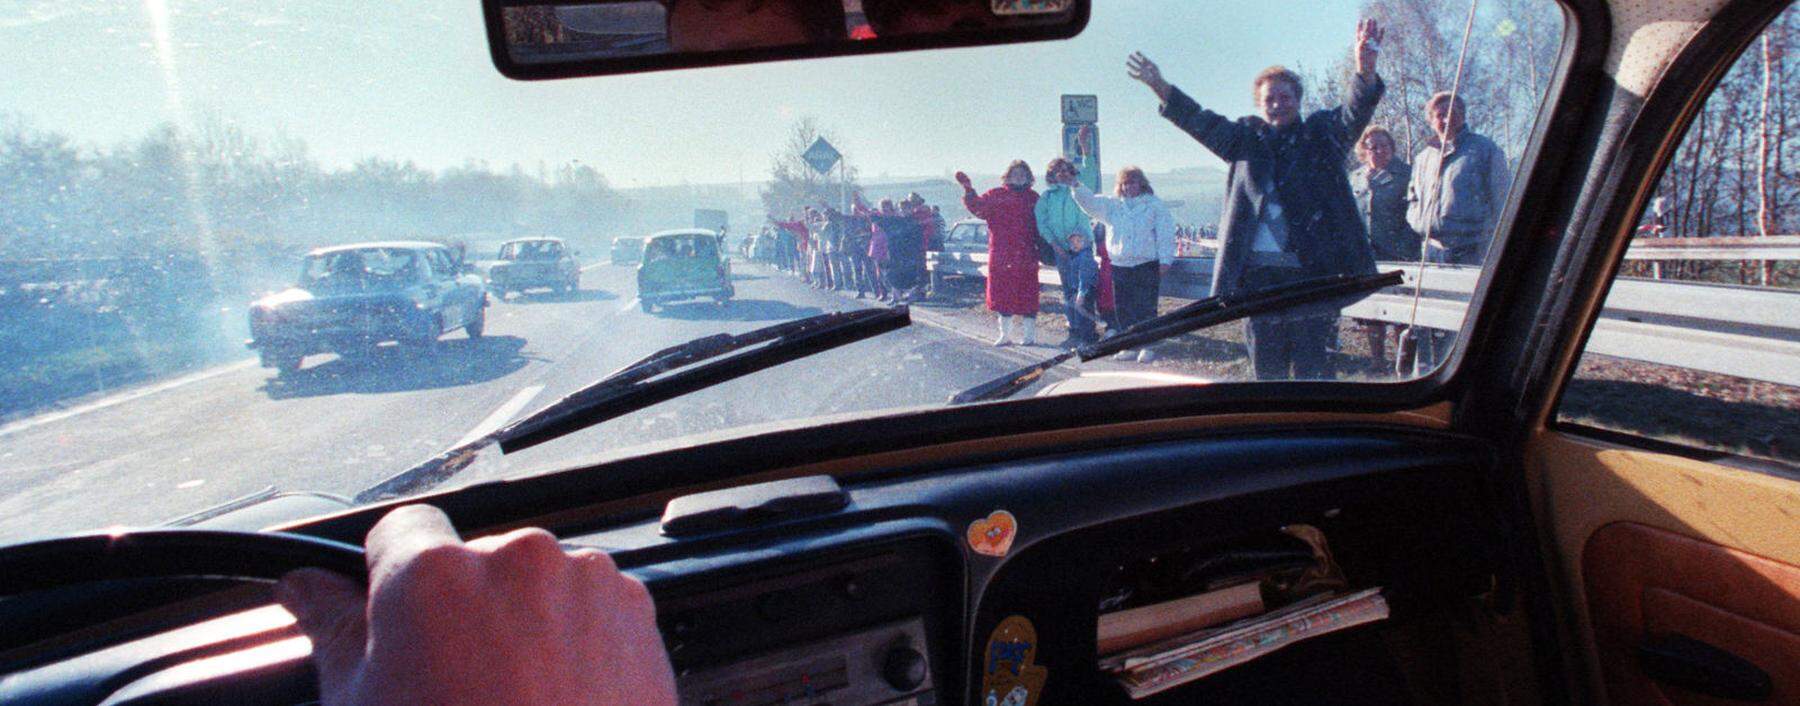 Im Trabi in den Westen: Bürger der Deutschen Demokratischen Republik überqueren im November 1989 die deutsch-deutsche Grenze.